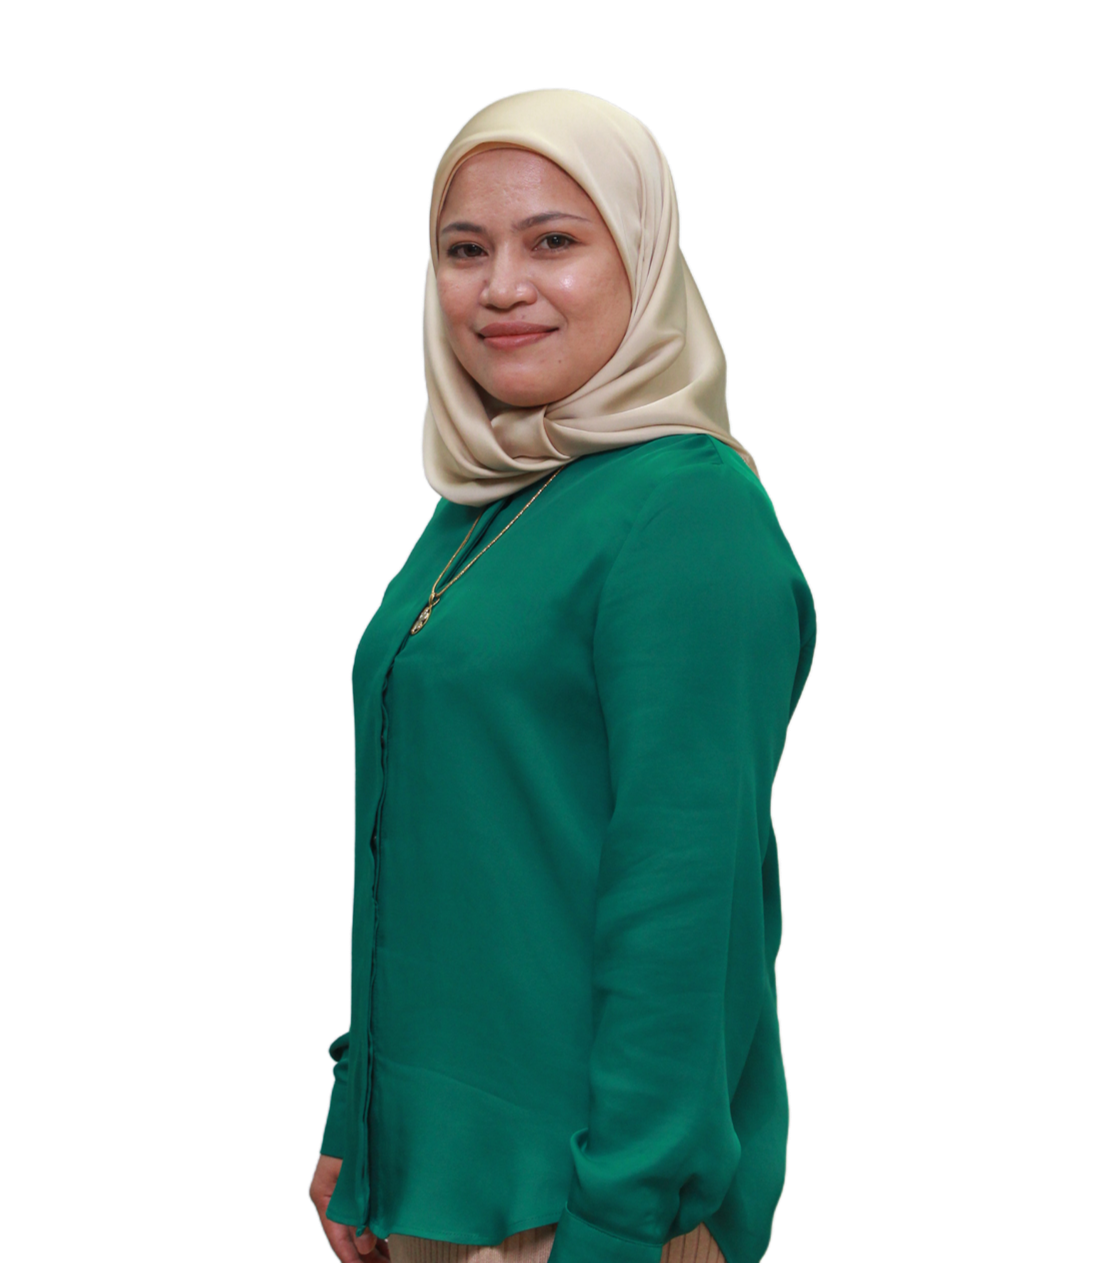 Dr. Shaili Falina Binti Mohd Sukri